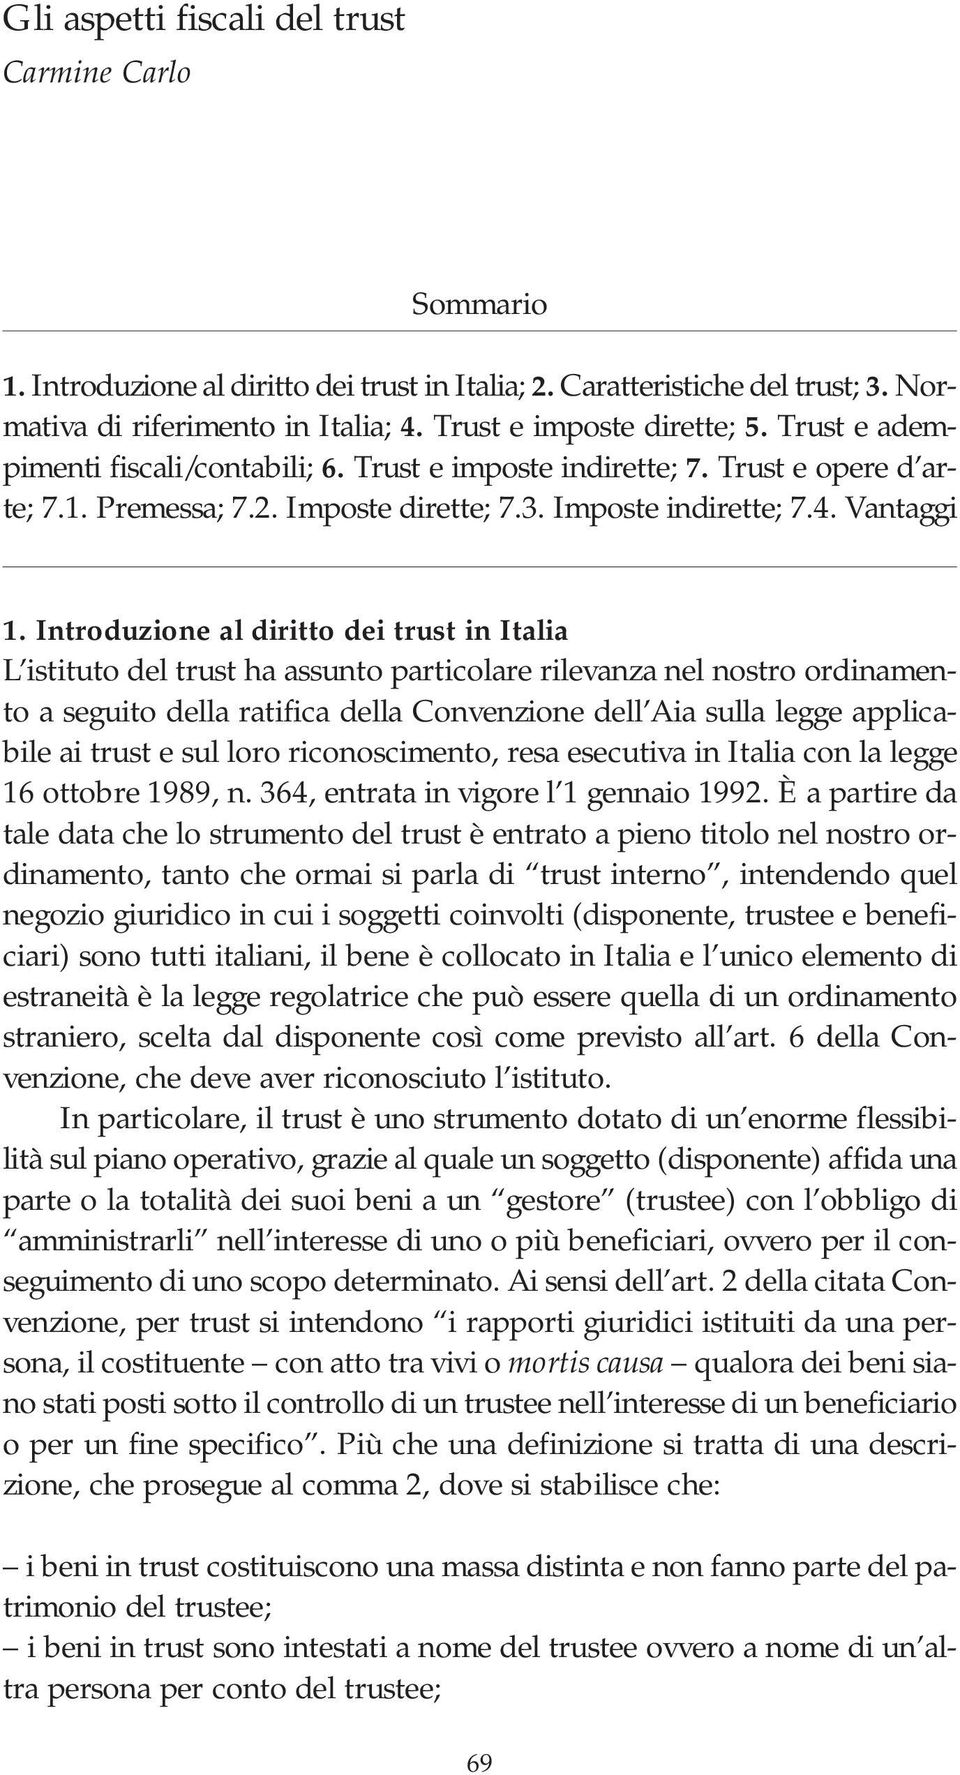 Introduzione al diritto dei trust in Italia L istituto del trust ha assunto particolare rilevanza nel nostro ordinamento a seguito della ratifica della Convenzione dell Aia sulla legge applicabile ai